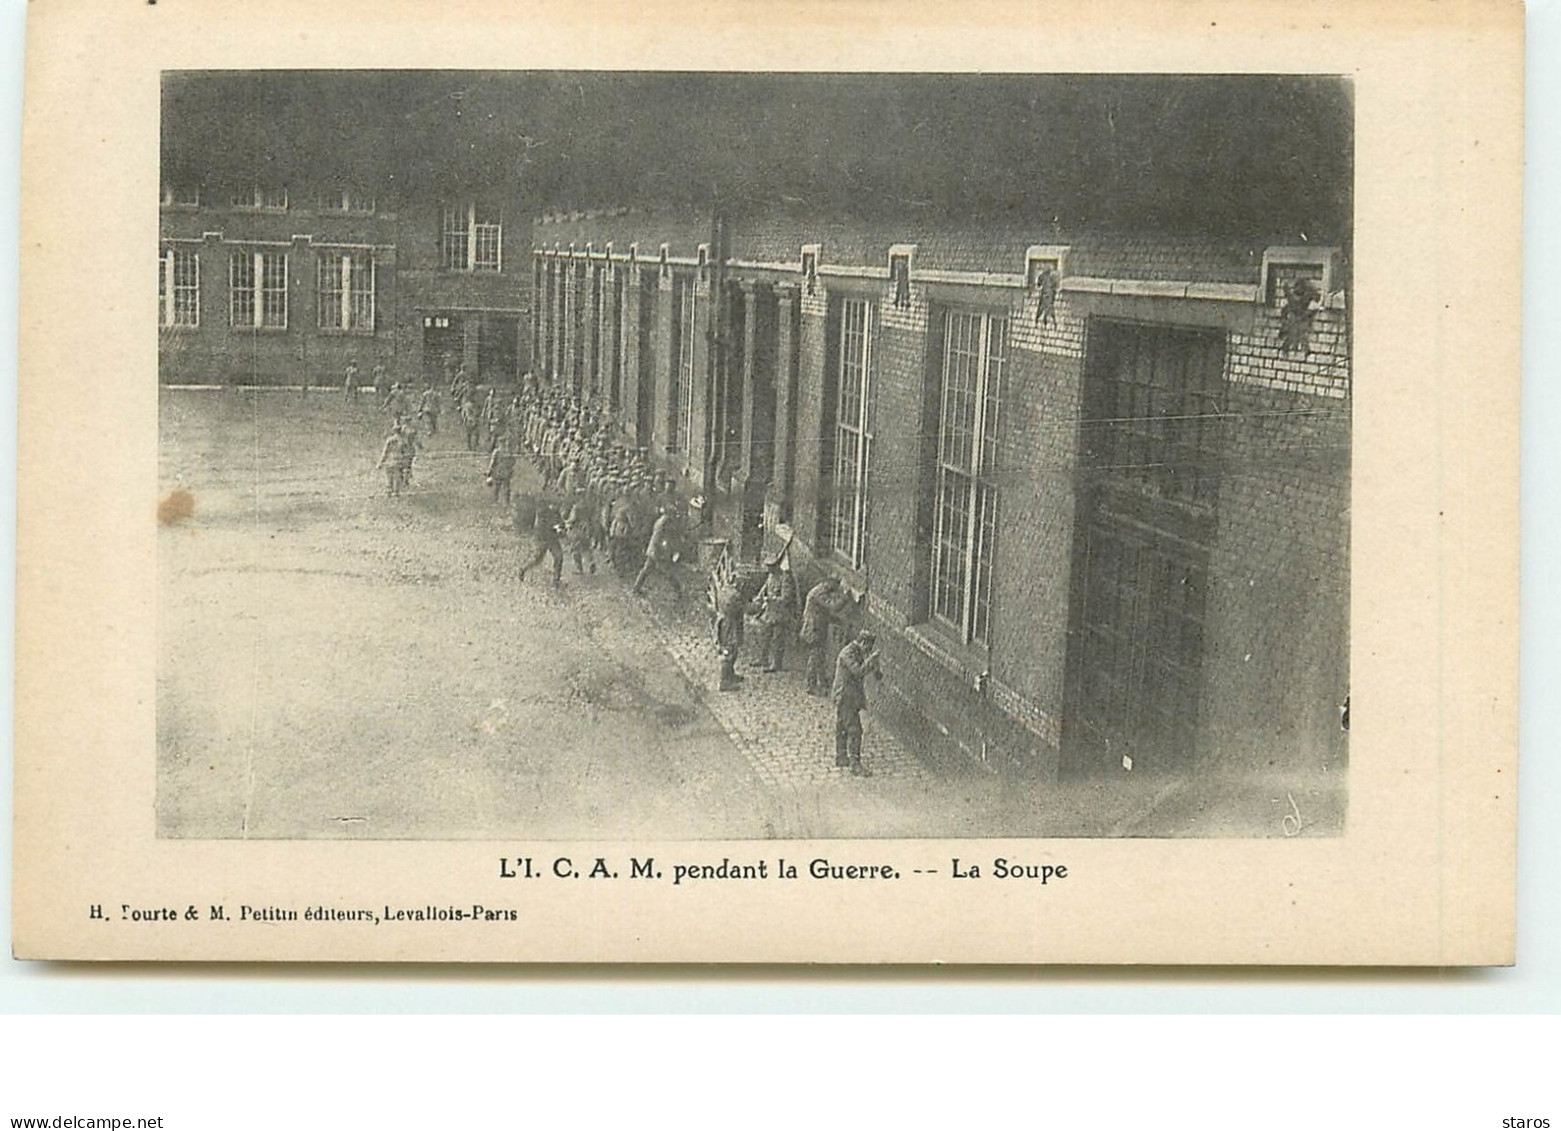 LILLE - Institut Catholique Arts Métiers (ICAM) Pendant La Guerre - La Soupe - Lille